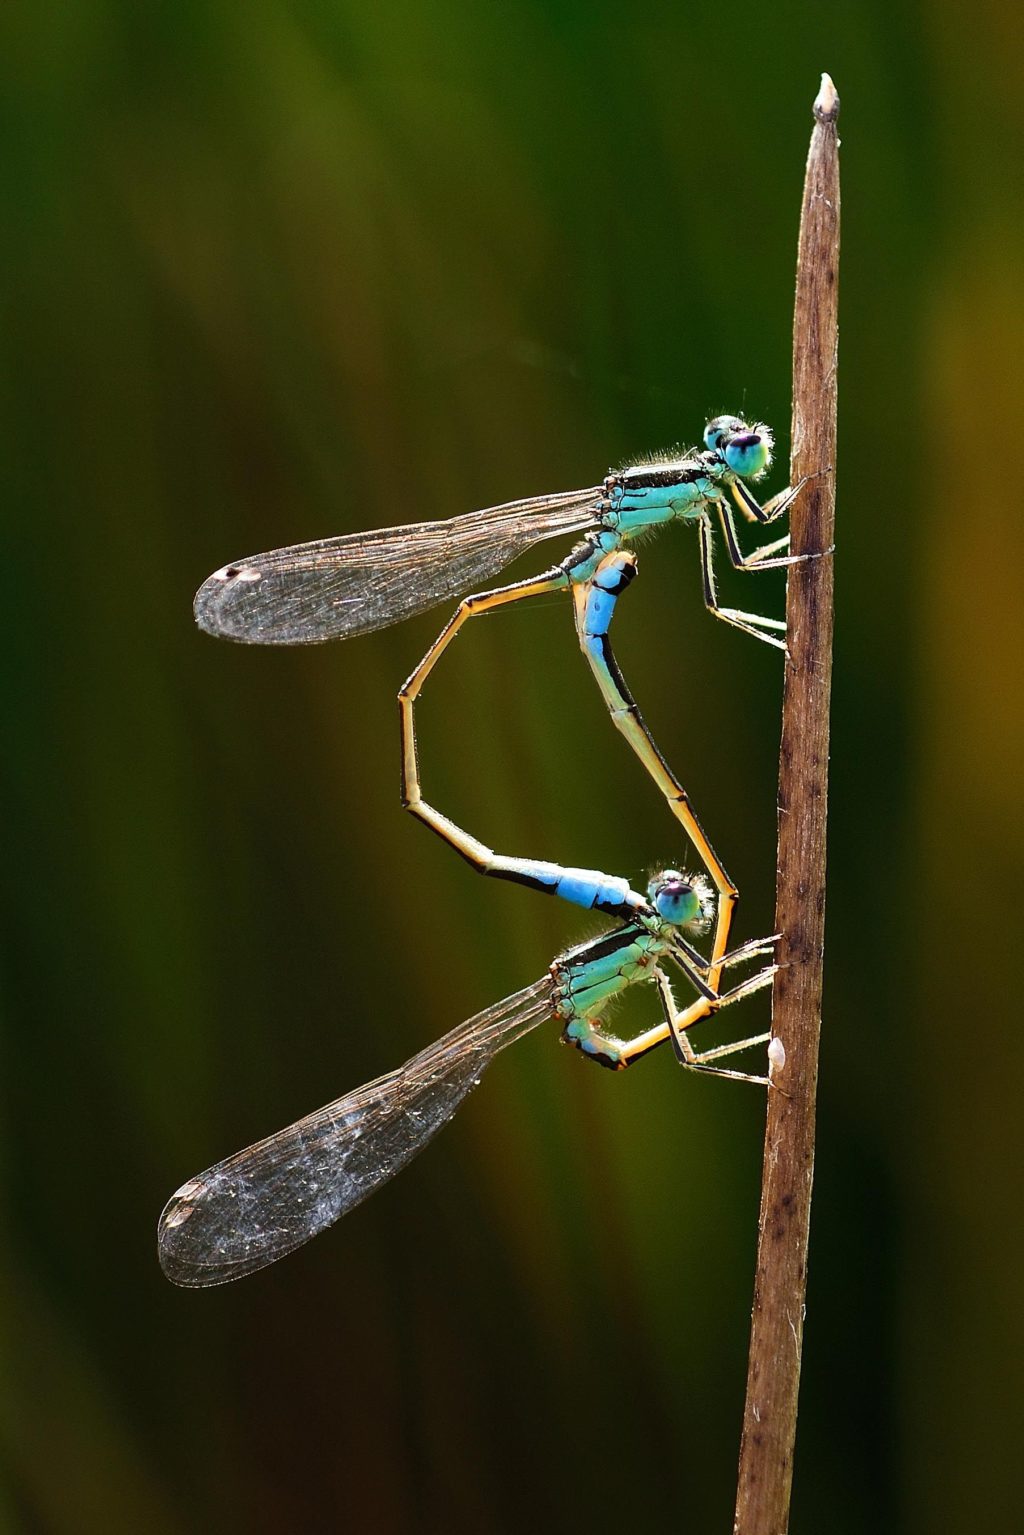 Foto de Los amantes del mundo de la entomología tienen una cita en